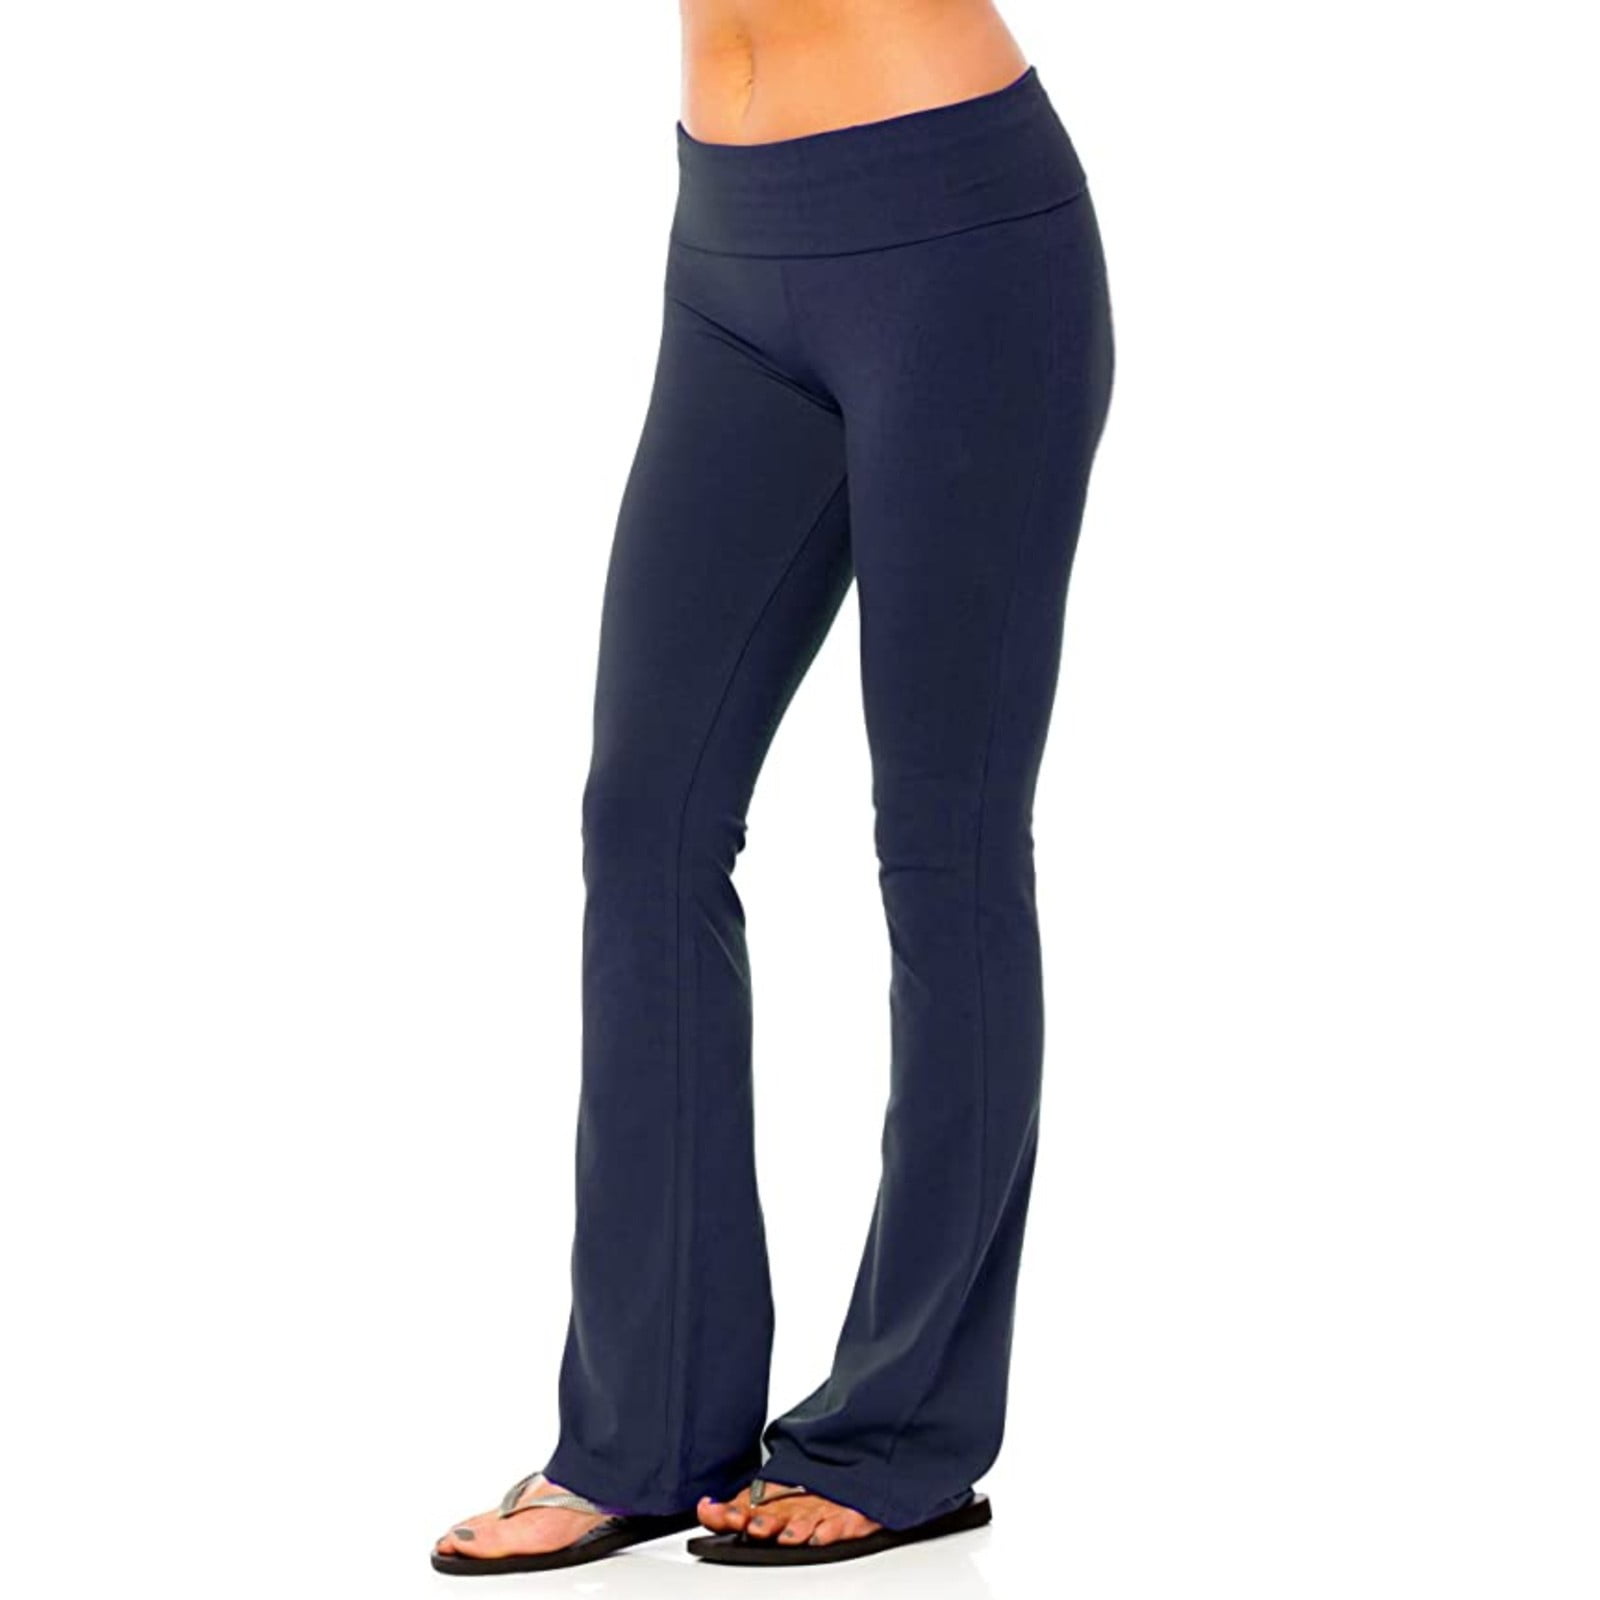 Womens Yoga Leggings Fitness Running Full Length Sports Active Pants ...